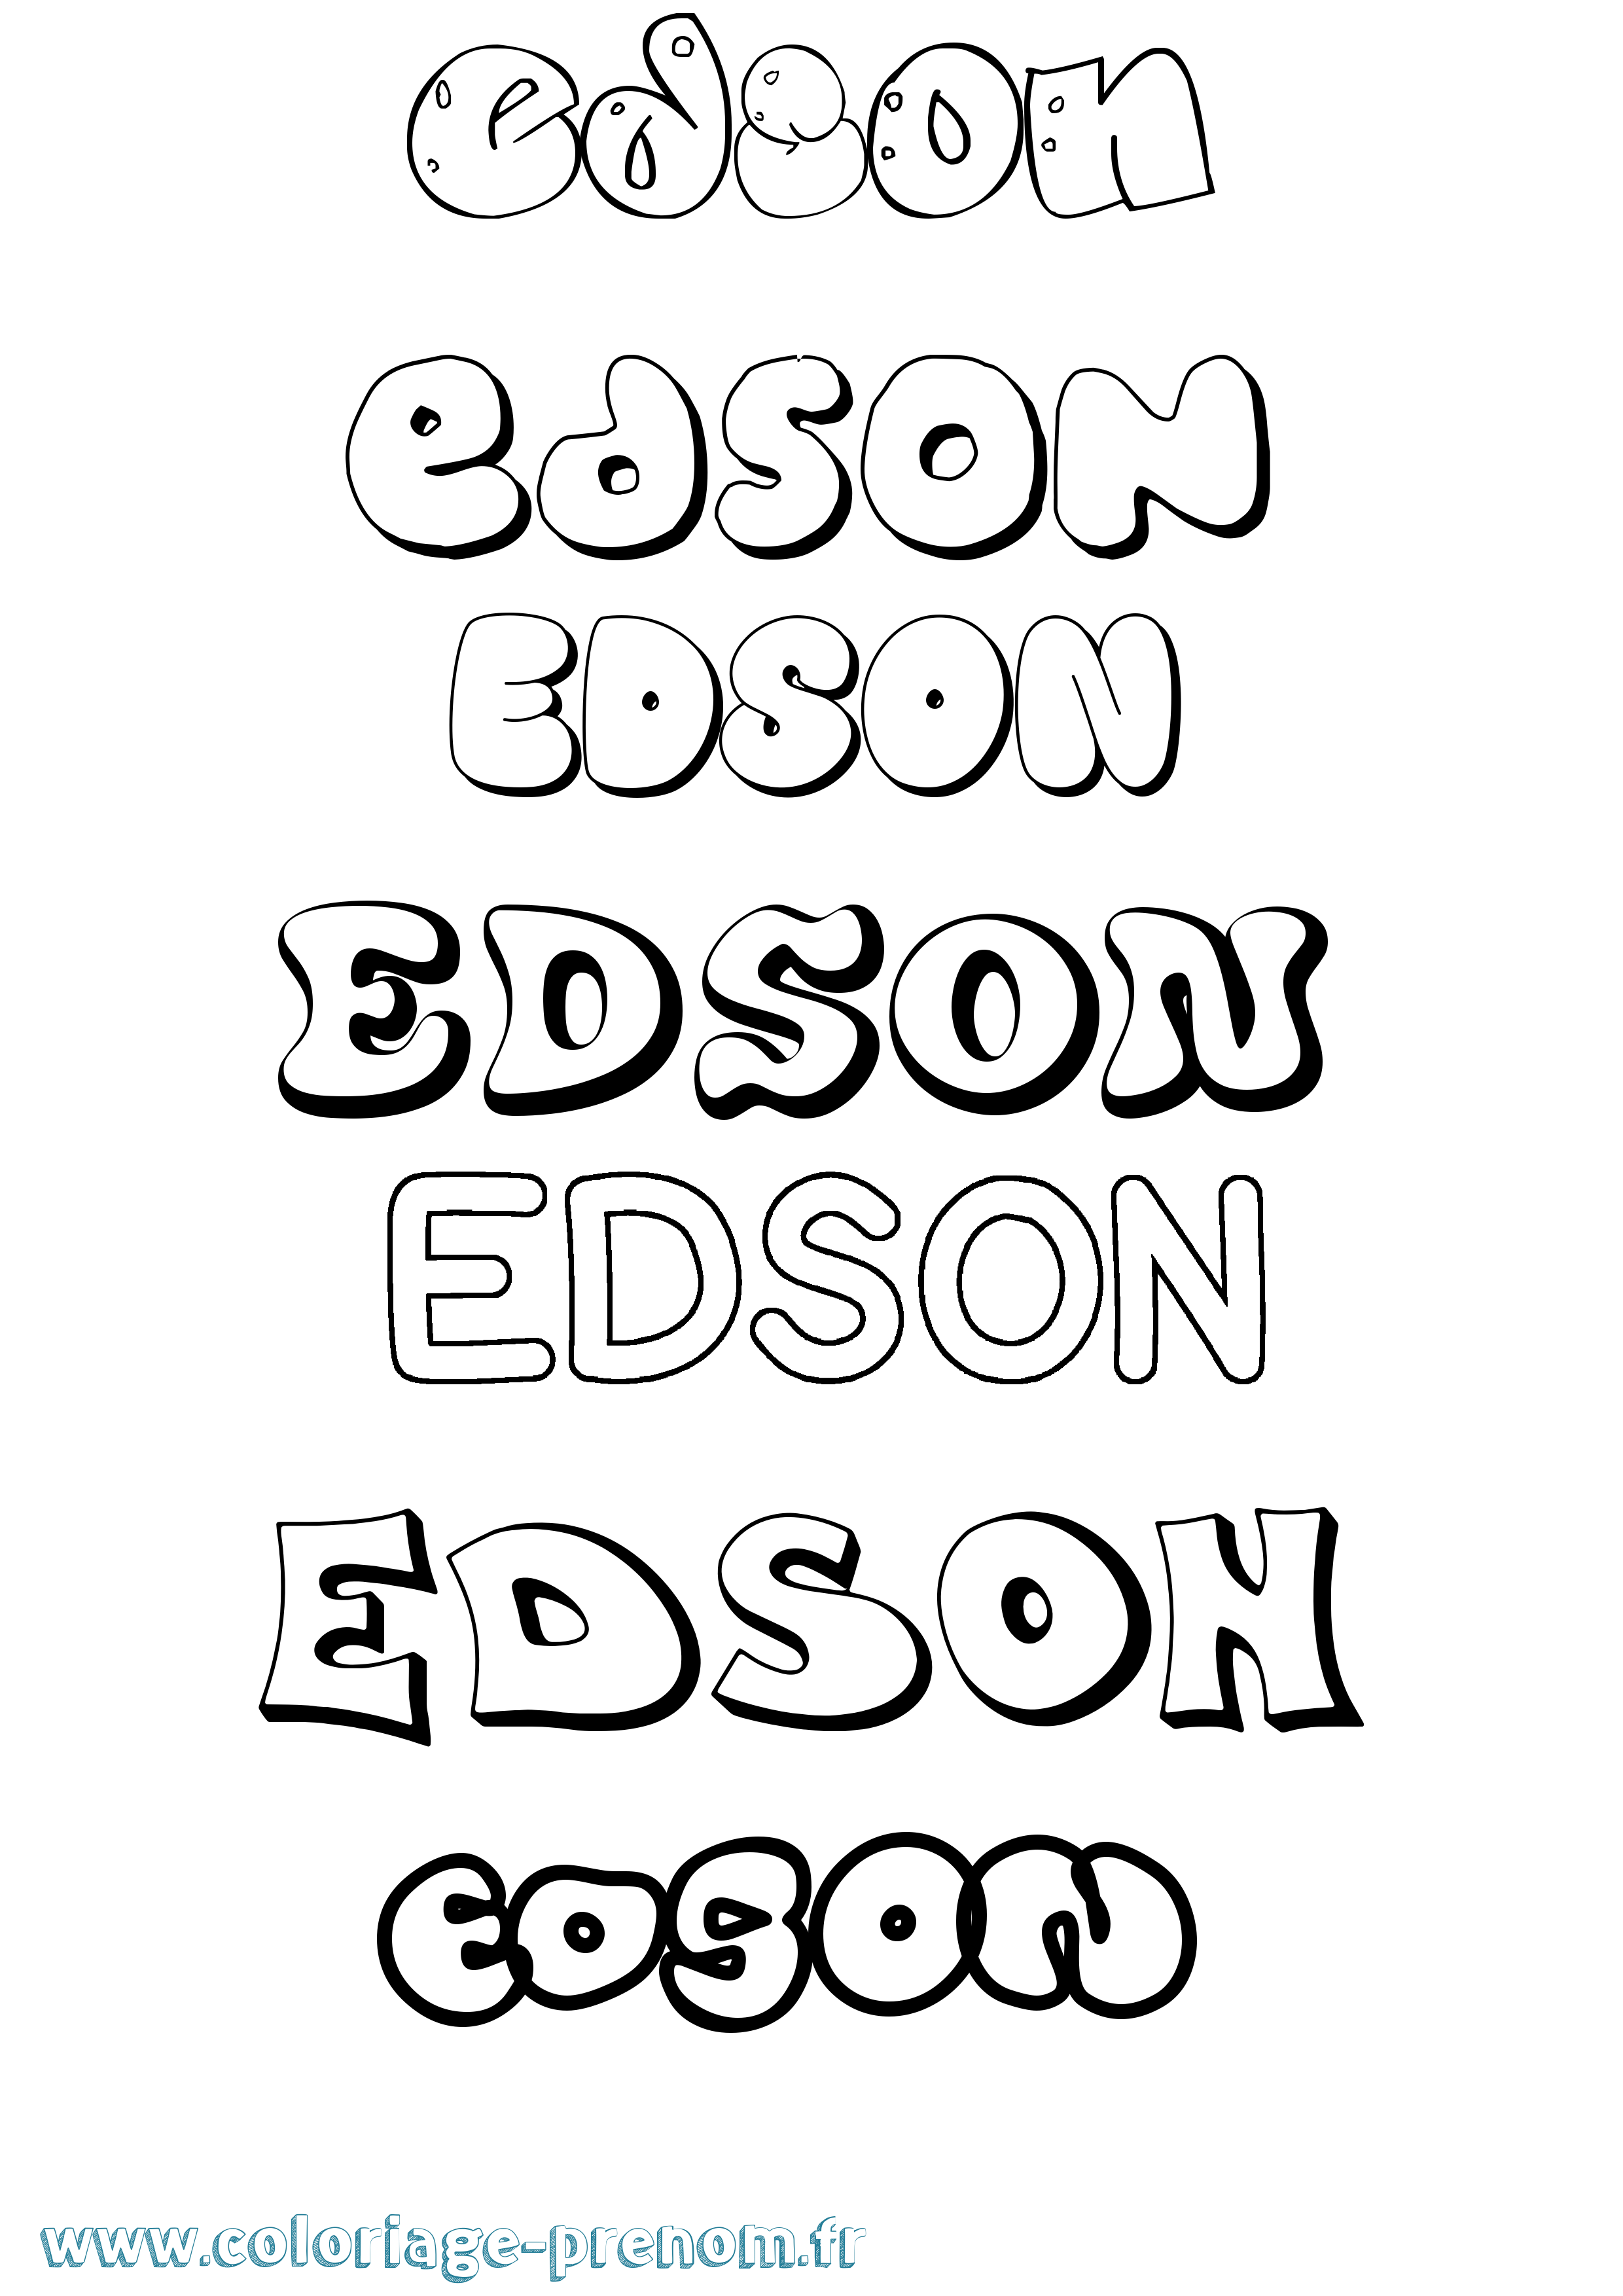 Coloriage prénom Edson Bubble